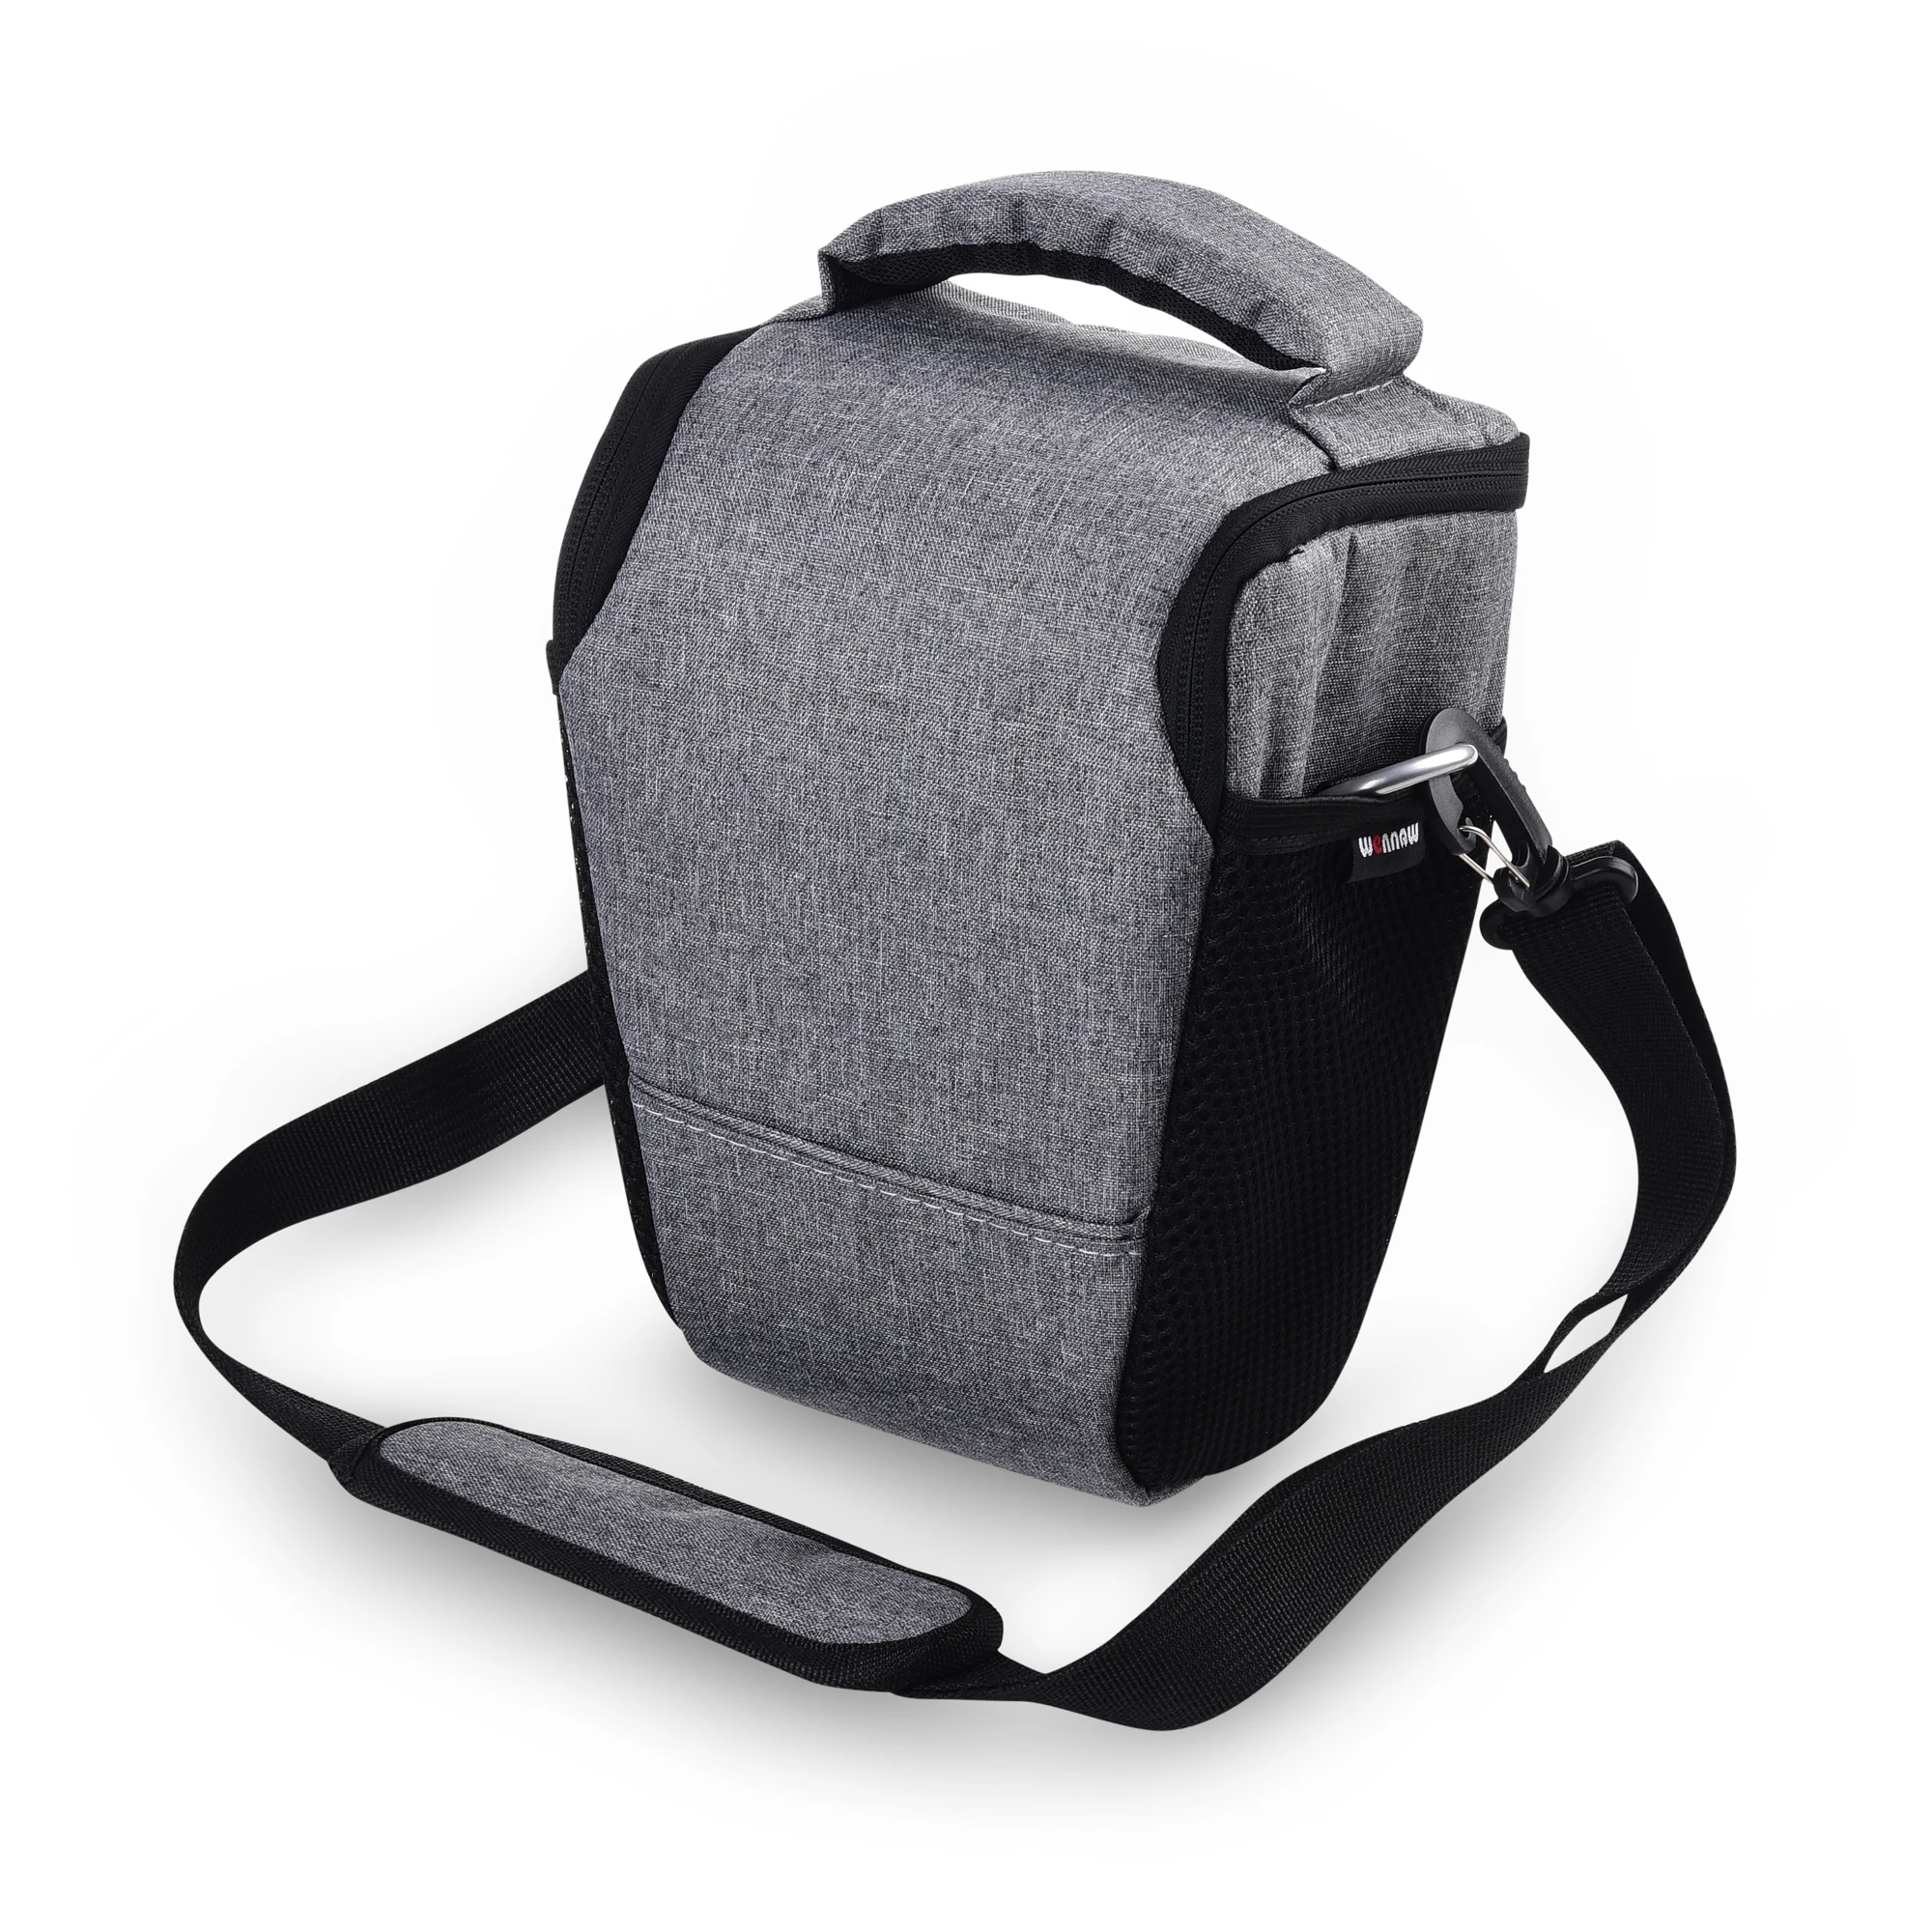 Рюкзак для гарнитуры для Nikon P1000 D3400 D80 D3200 D3300 D5200 D5500 P900 P900S D90 D7200 D750 D5600 объектив противоударный сумка